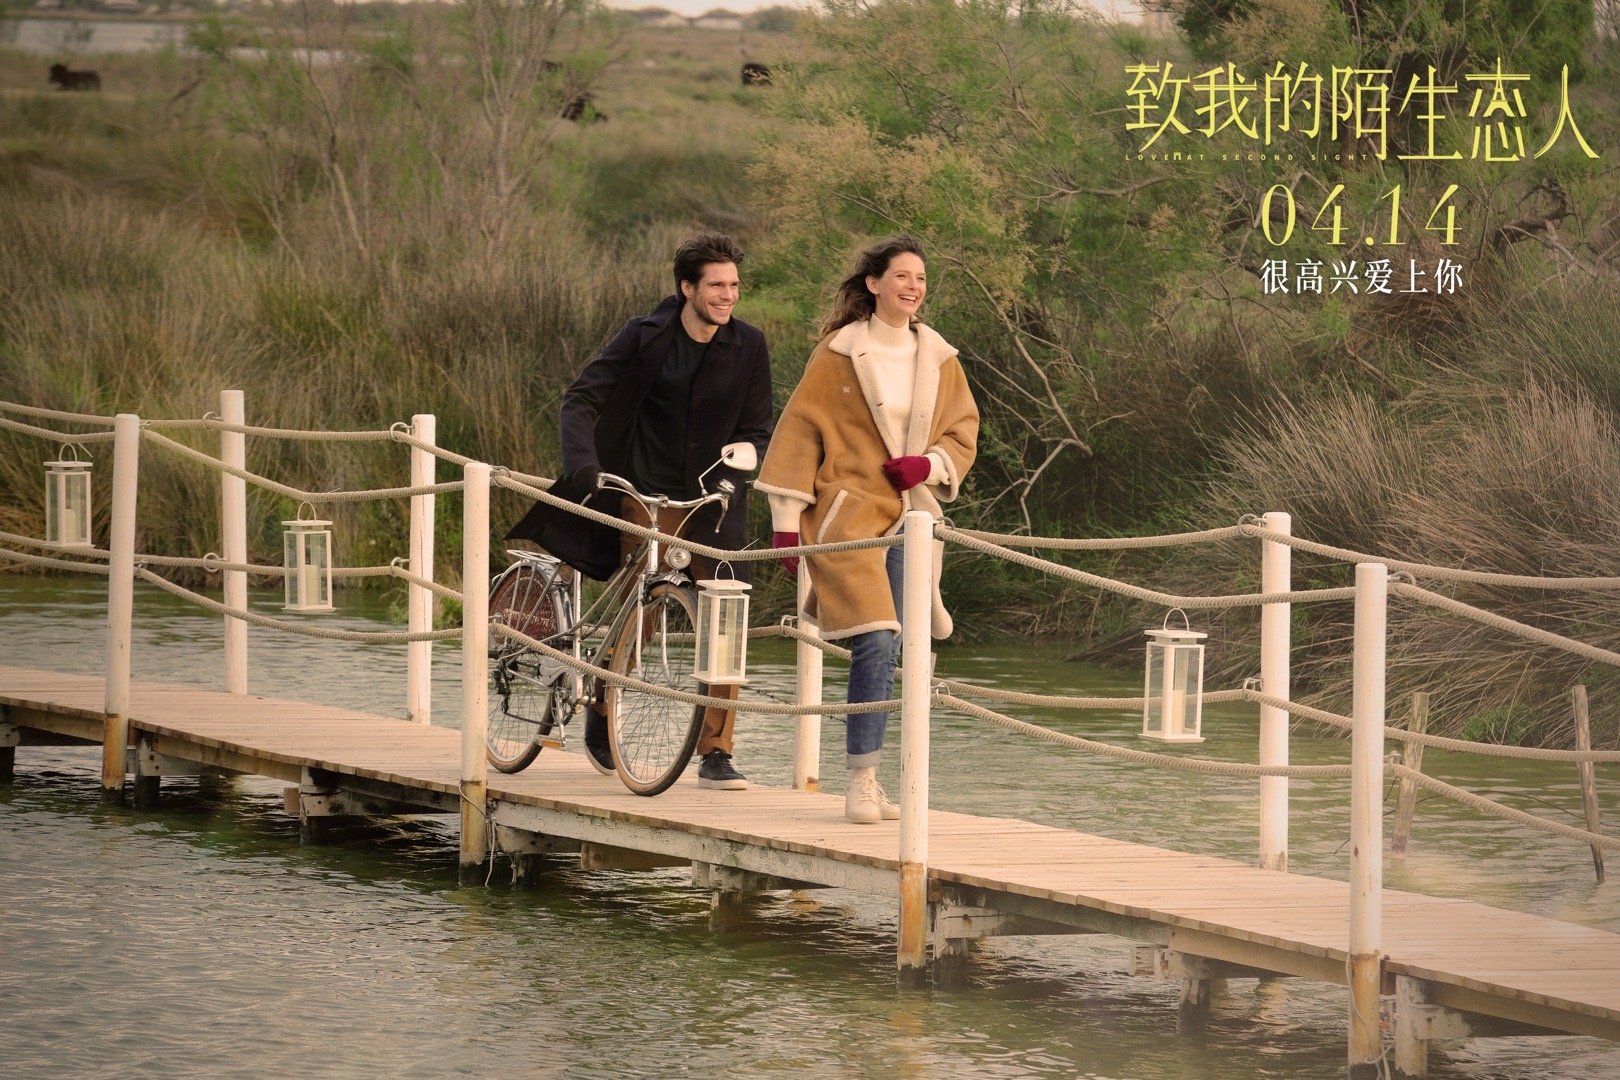 法国爱情电影《致我的陌生恋人》4月14日上映